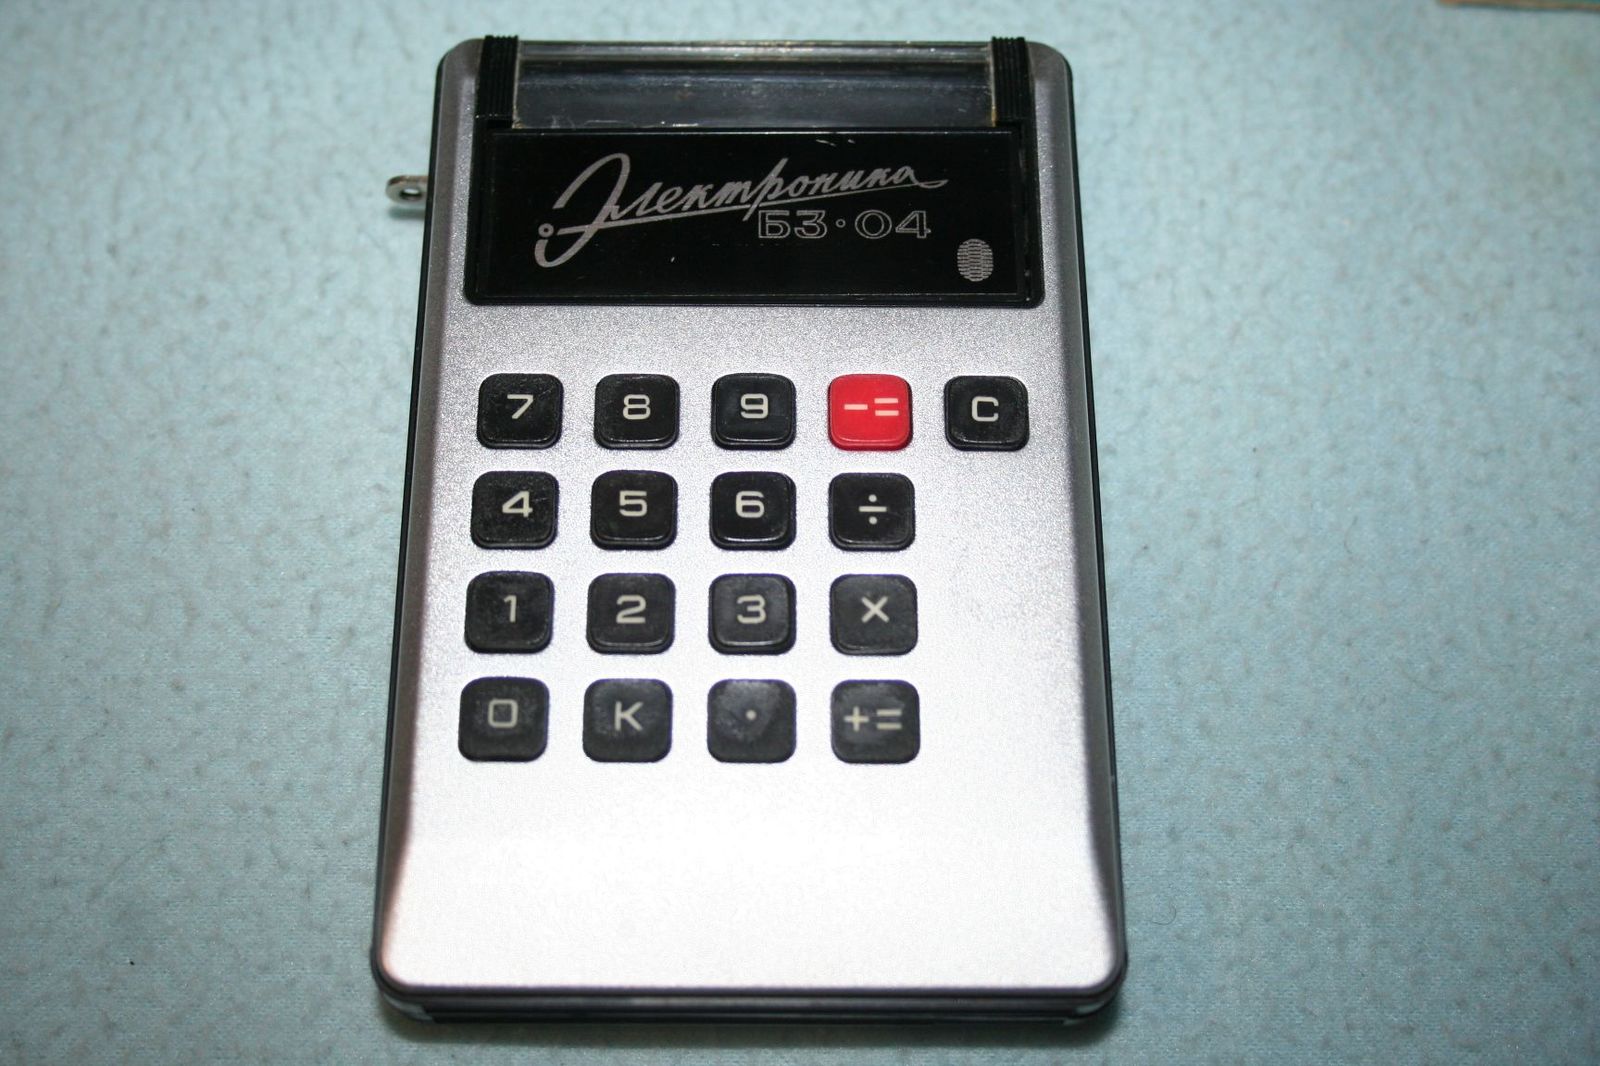 Какое устройство в ссср. Электроника б3 04 калькулятор. Калькулятор карманный электроника б3. Б3-04 калькулятор микрокалькулятор электроника. Электроника БЗ-04.